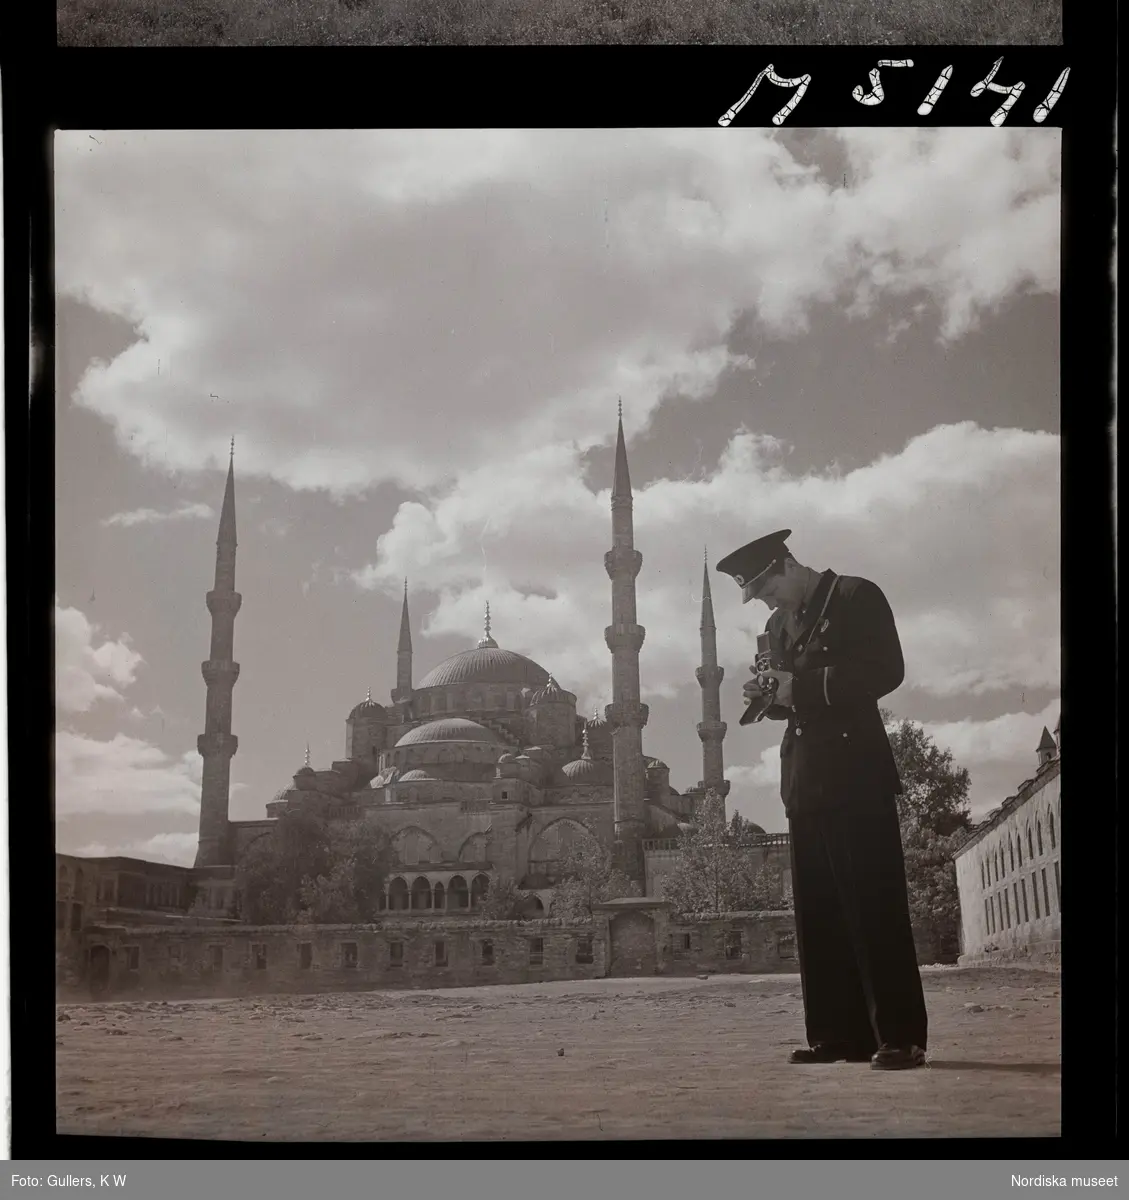 1717/L Istanbul allmänt. En turistande man i uniform fotograferar med sin kamera framför en moské.